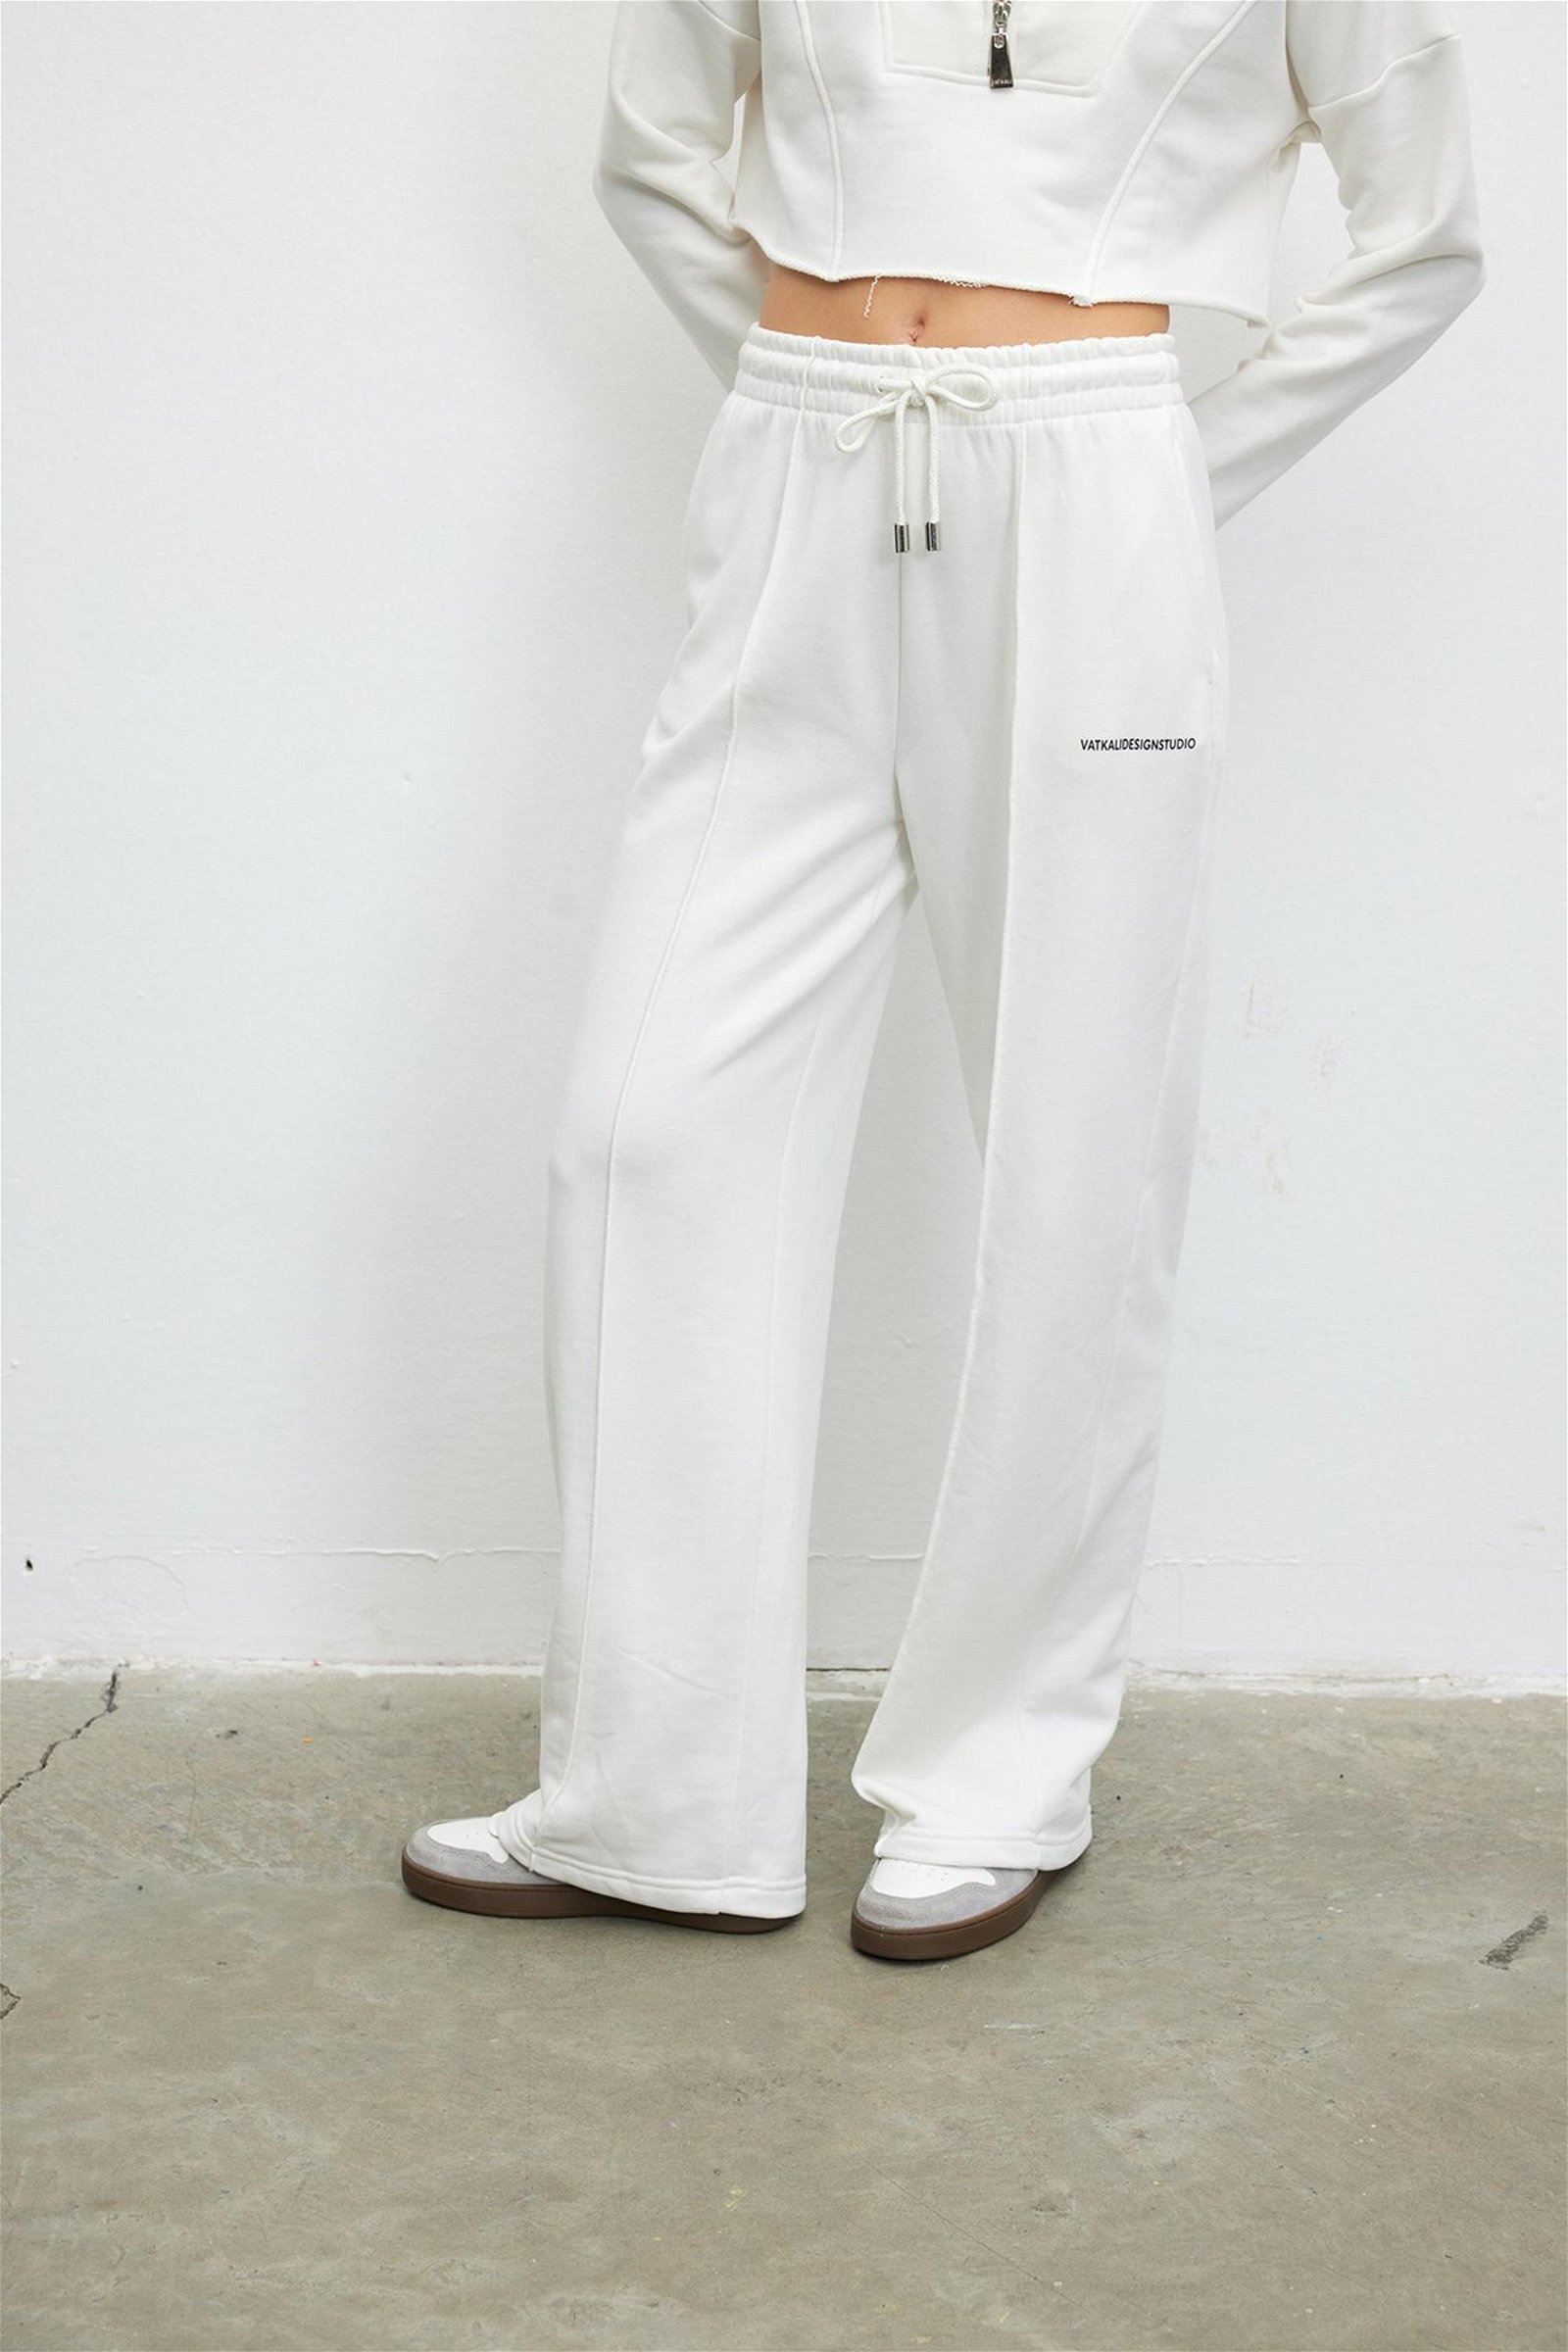 Vatkalı Kadın Bağcıklı Pamuklu Jogger Pantolon Beyaz